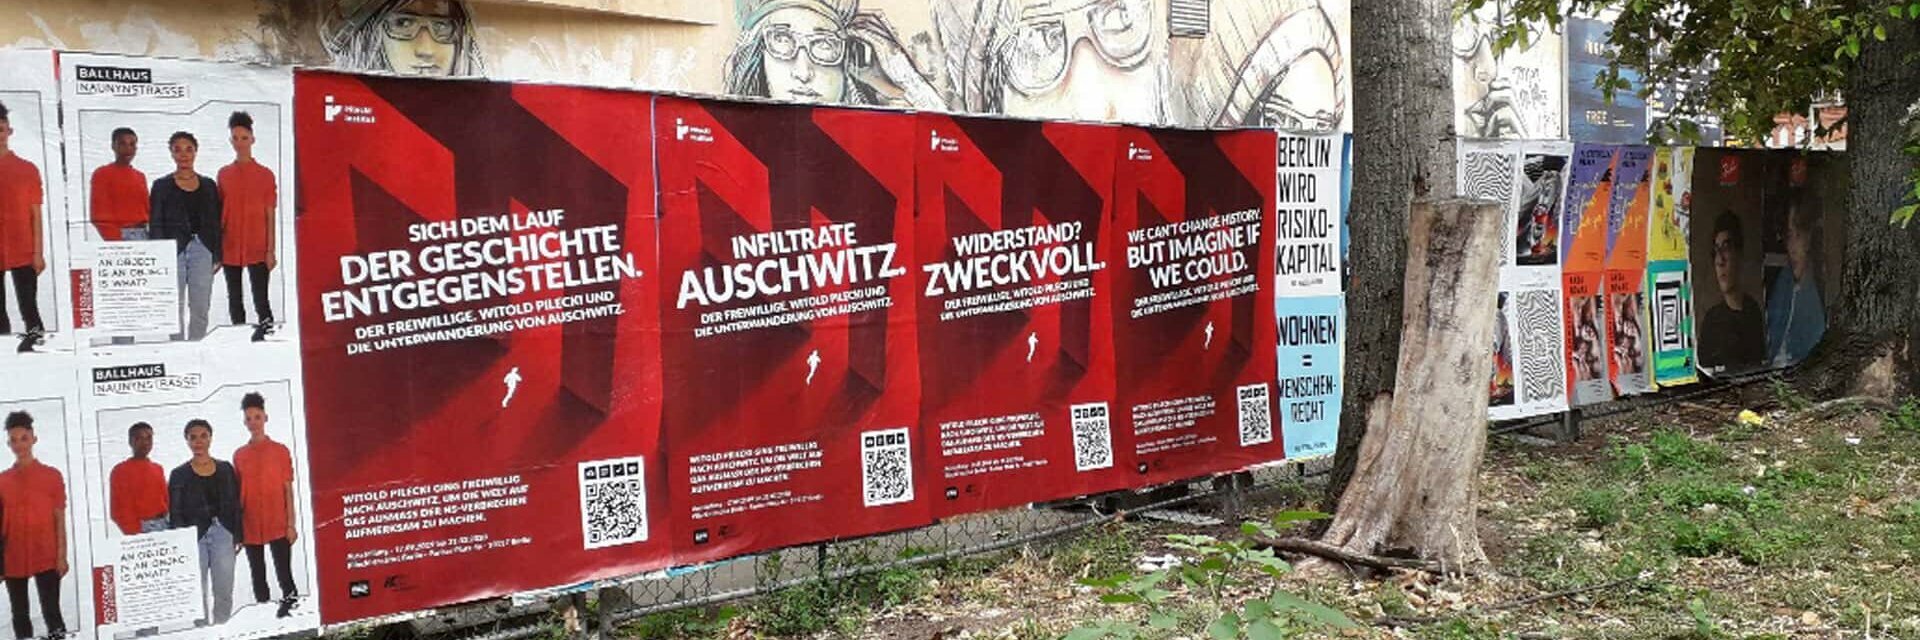 [Translate to English:] Der Geschichte entgegenstellen. Infiltrate Auschwitz.